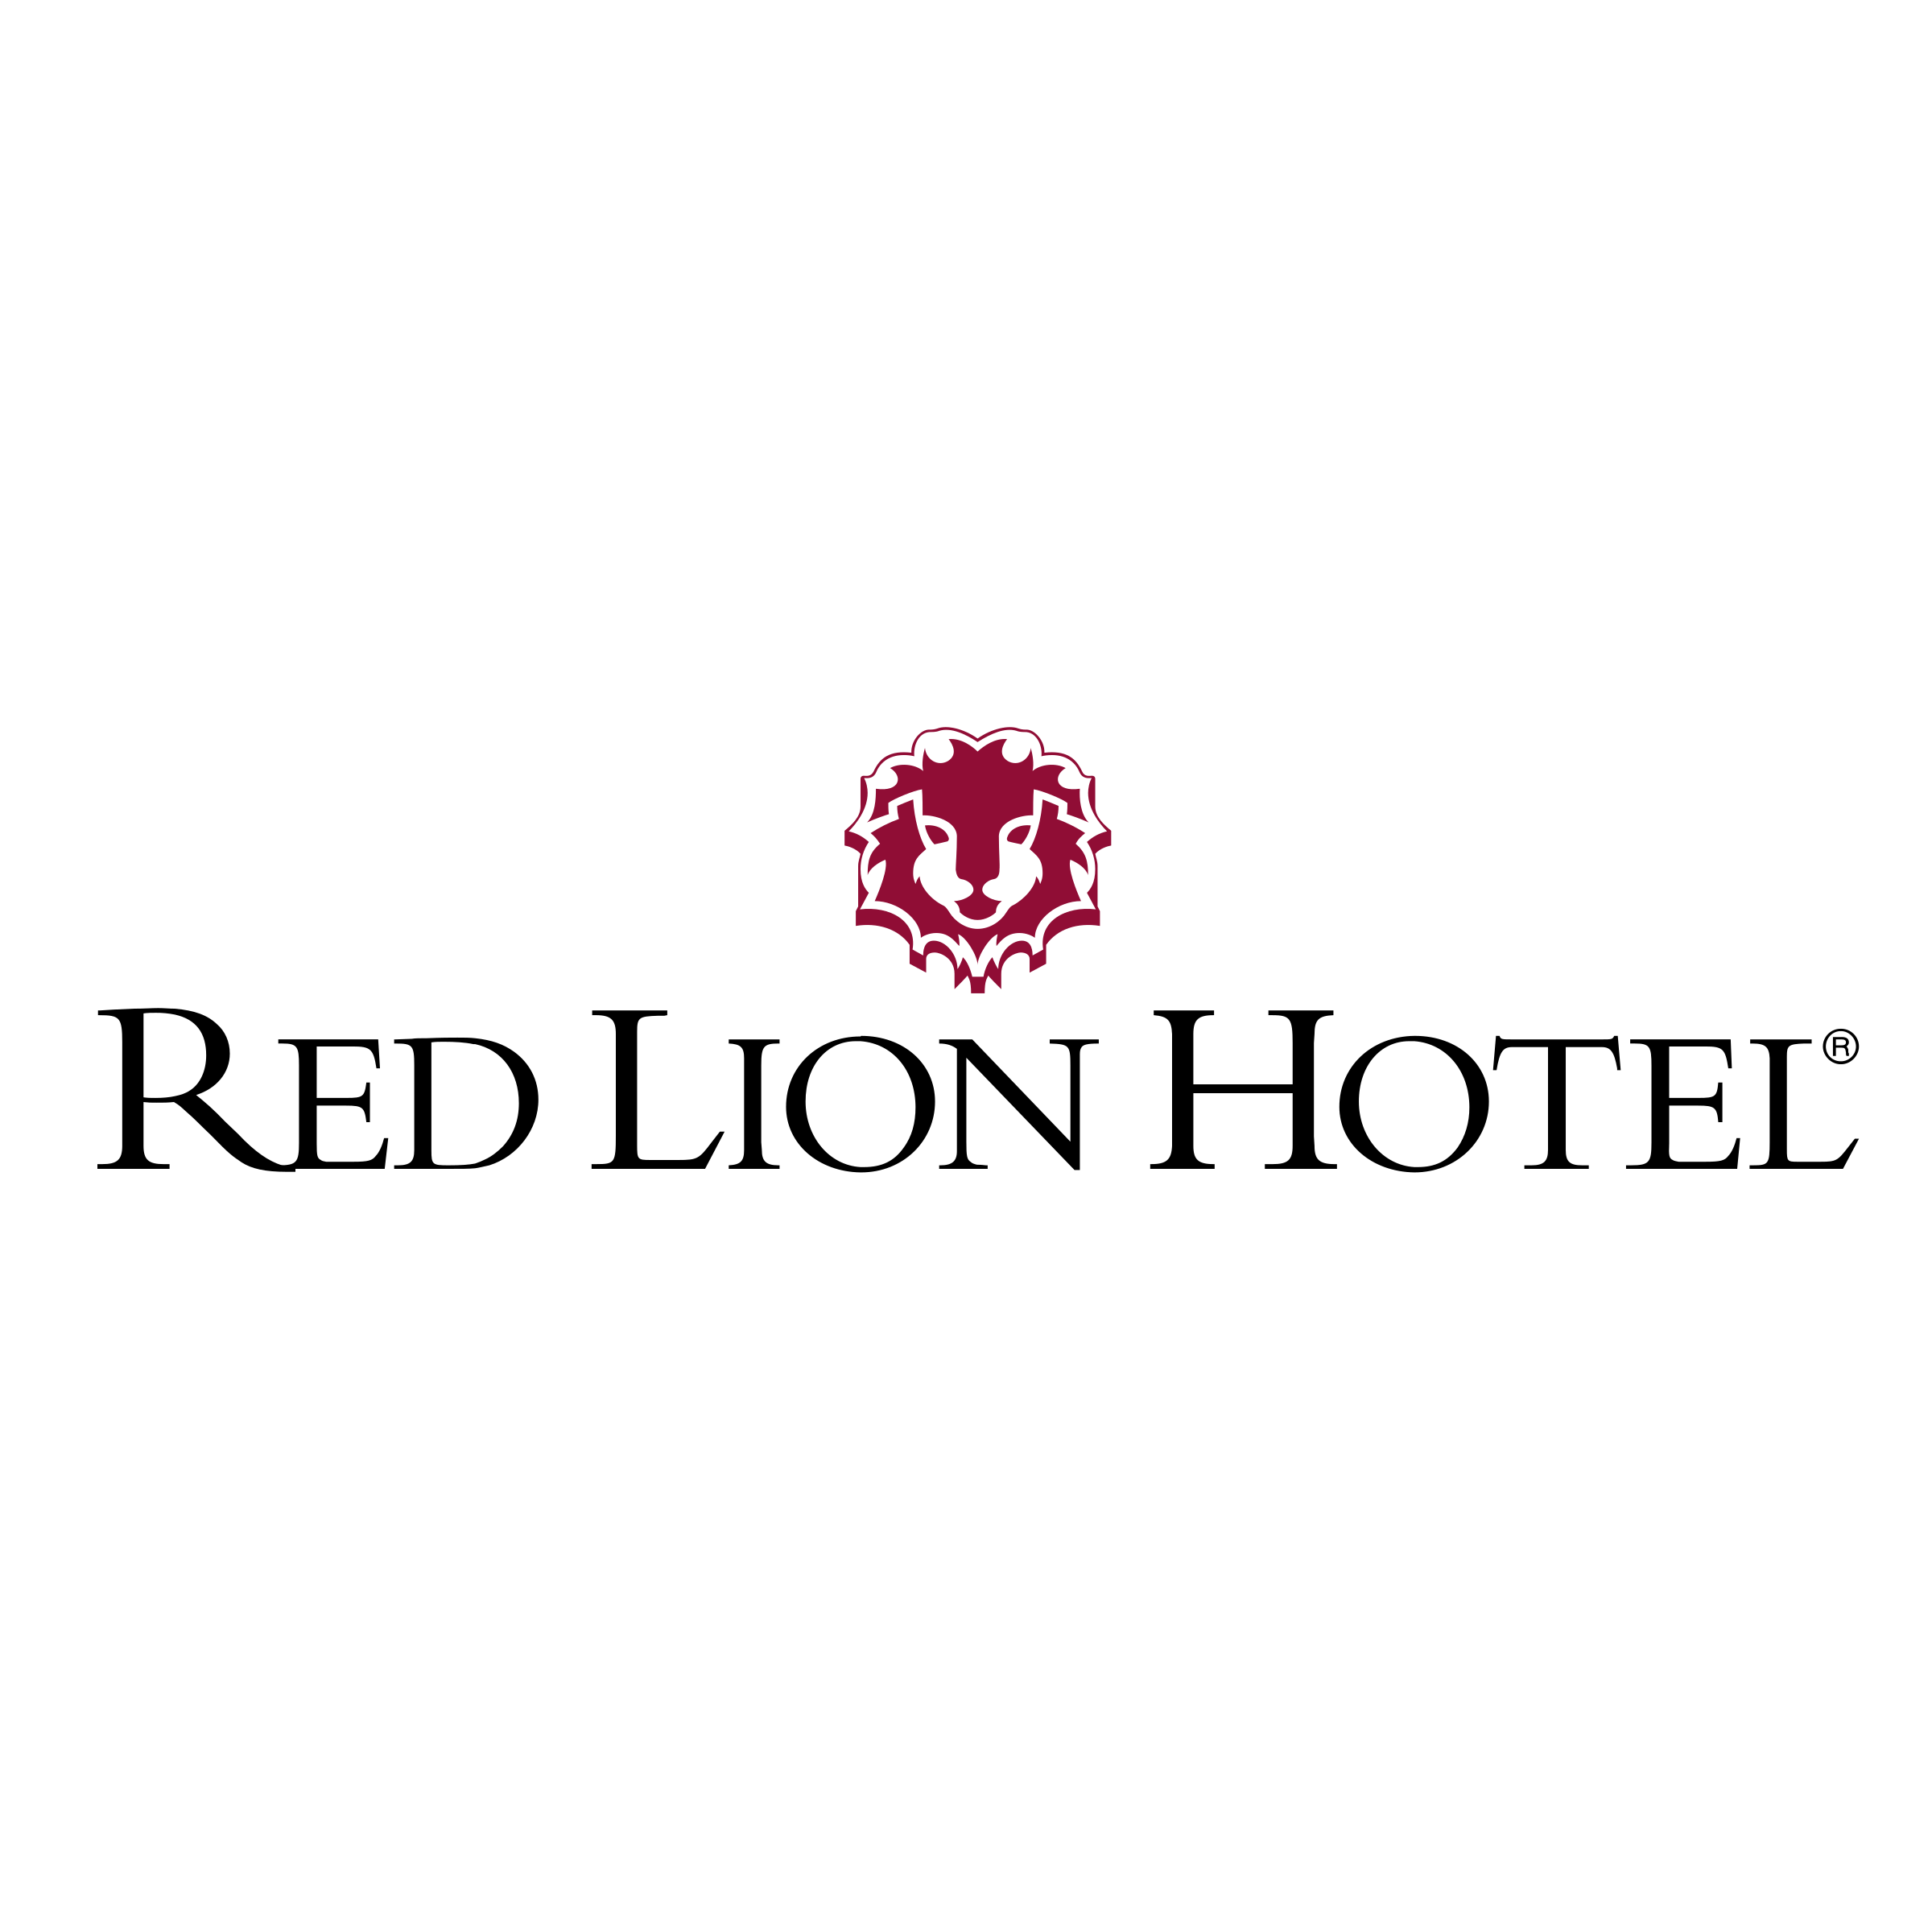 Lion Hotel Logo - Red Lion Hotel Logo PNG Transparent & SVG Vector